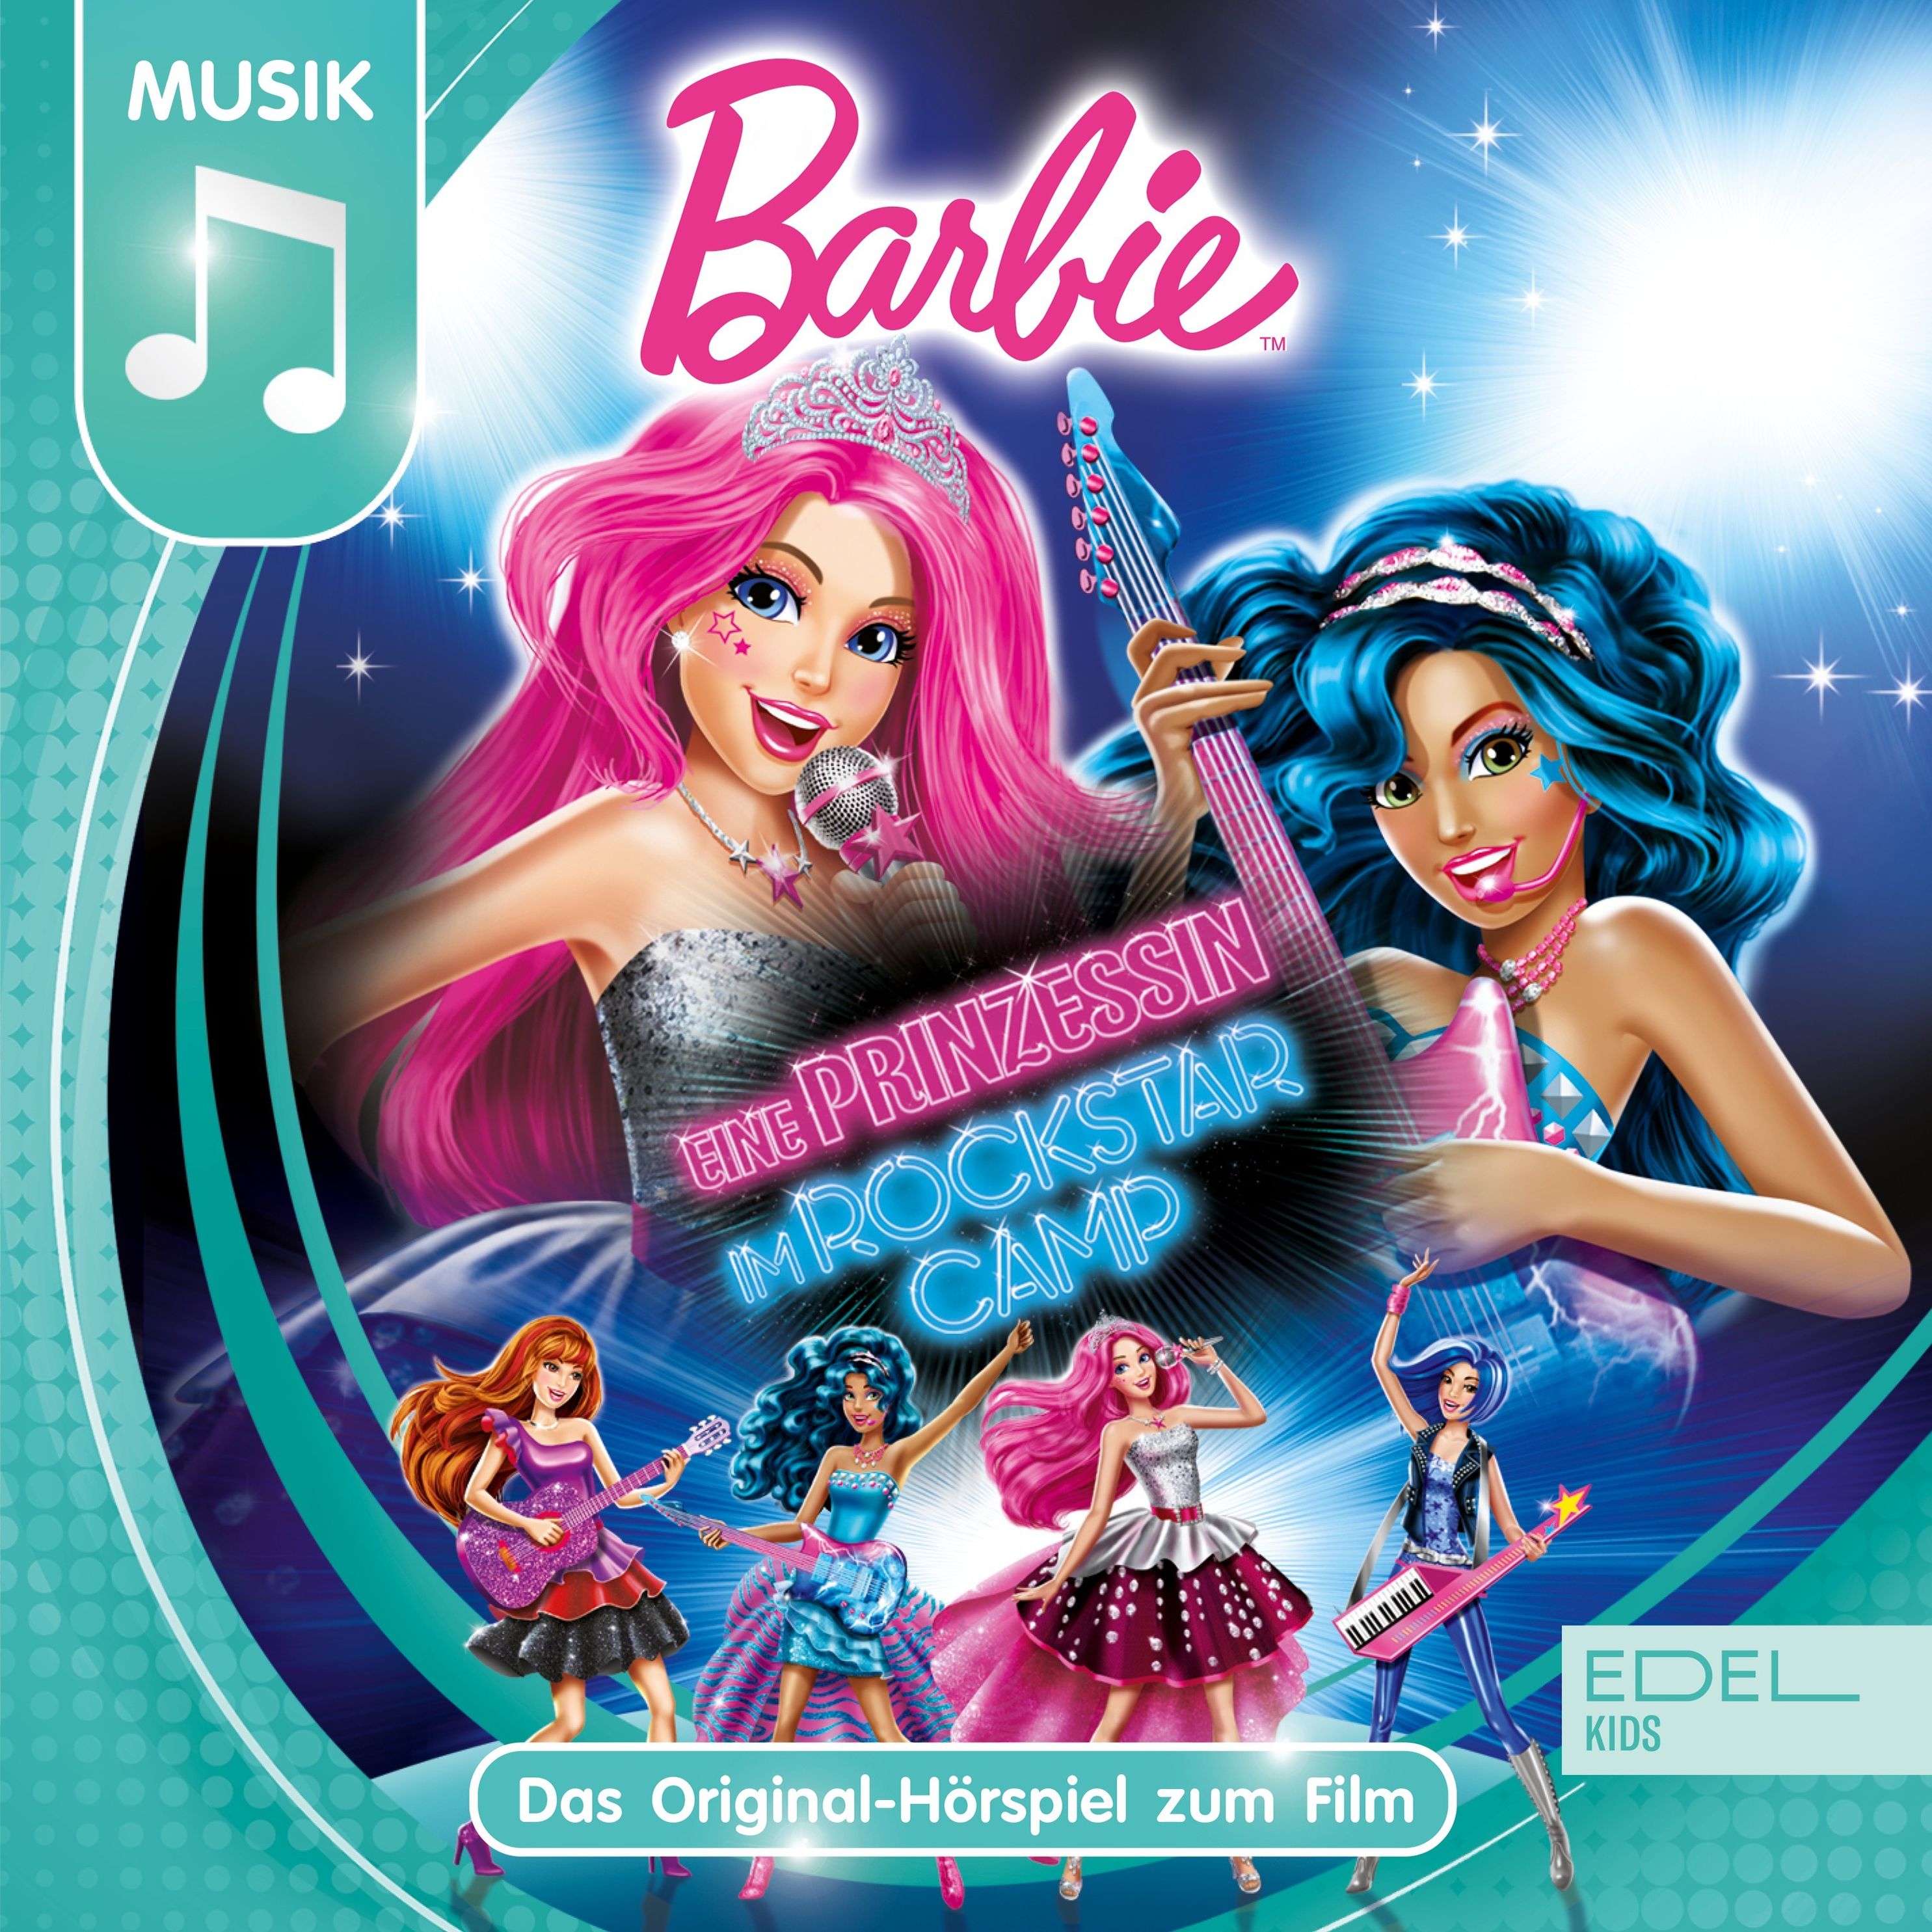 Barbie - Eine Prinzessin im Rockstar Camp Das Original-Hörspiel zum Film  Hörbuch Download